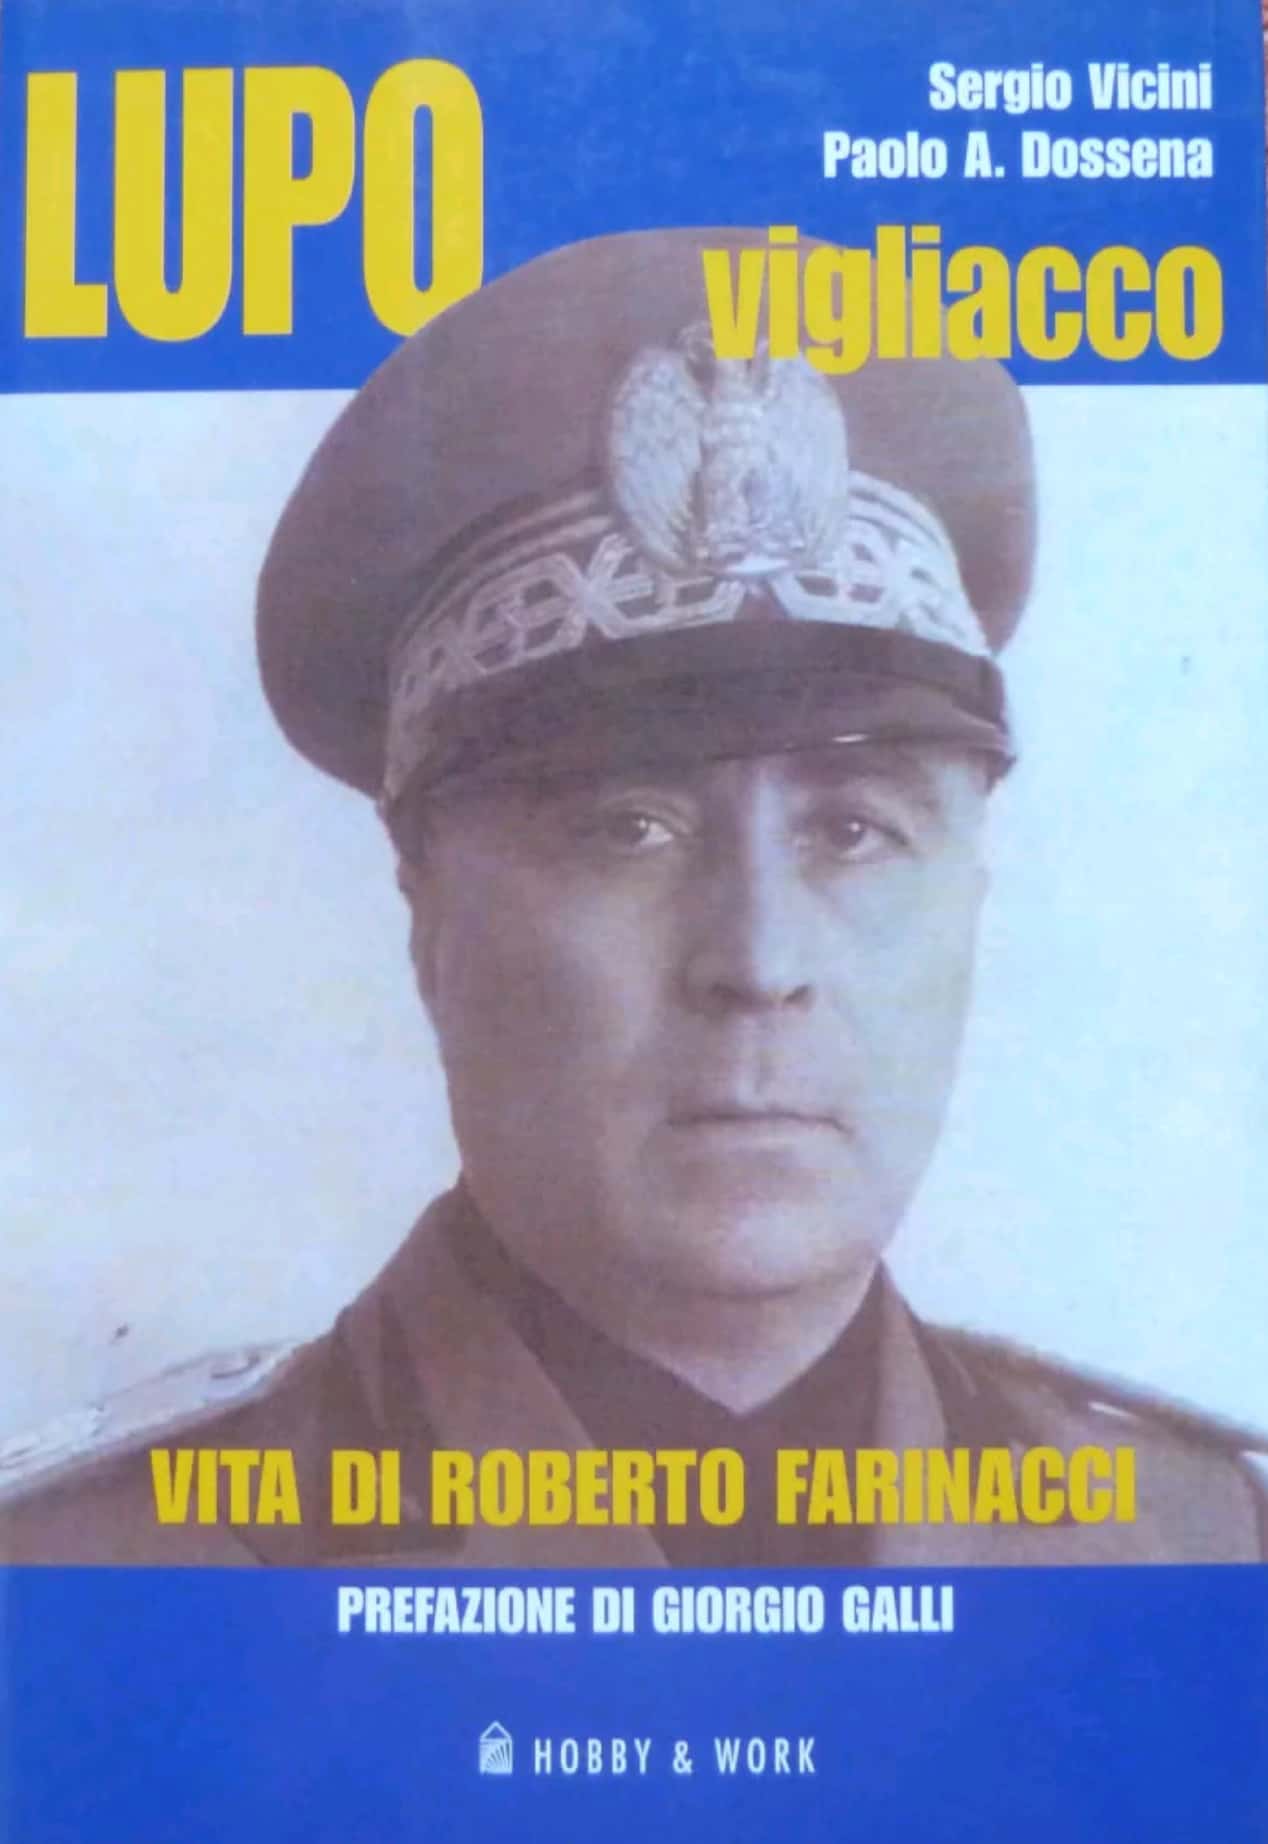 Il libro “Lupo vigliacco: vita di Roberto Farinacci” di Vicini & Dossena è quasi scomparso